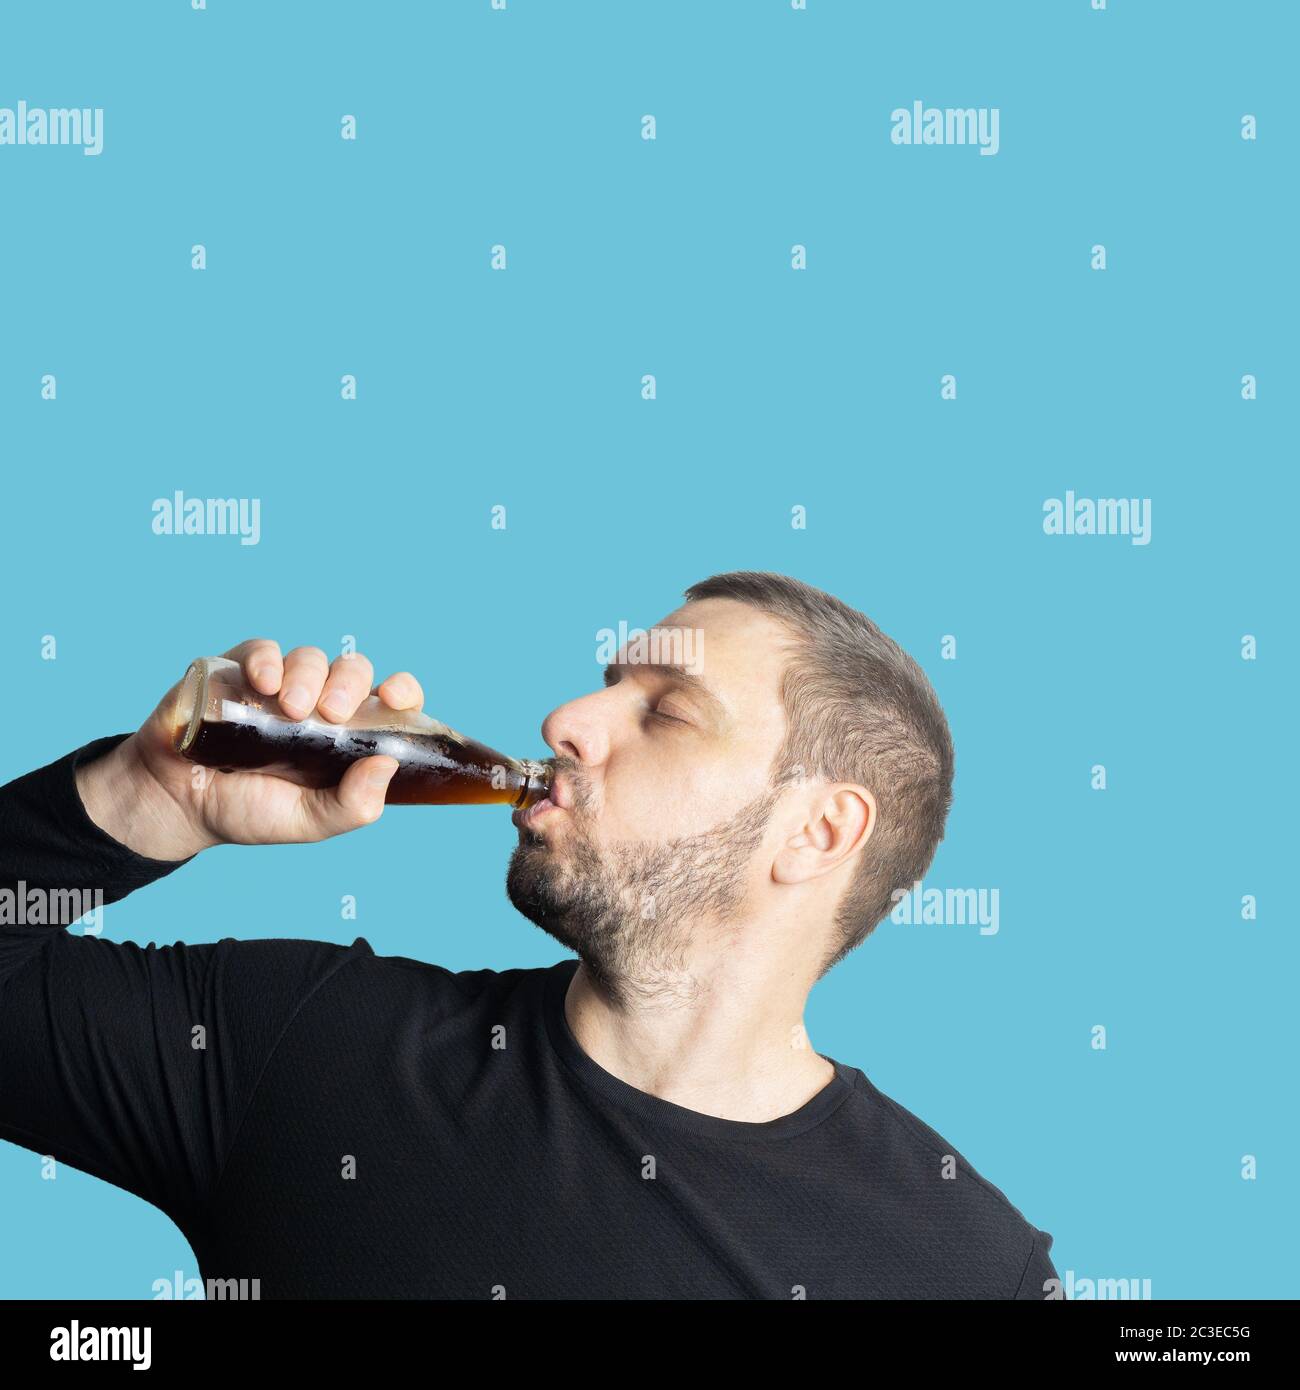 Dunkelhaariger bärtiger Mann in dunkler Kleidung trinkt mit geschlossenen Augen ein dunkles Getränk aus einer Flasche Stockfoto